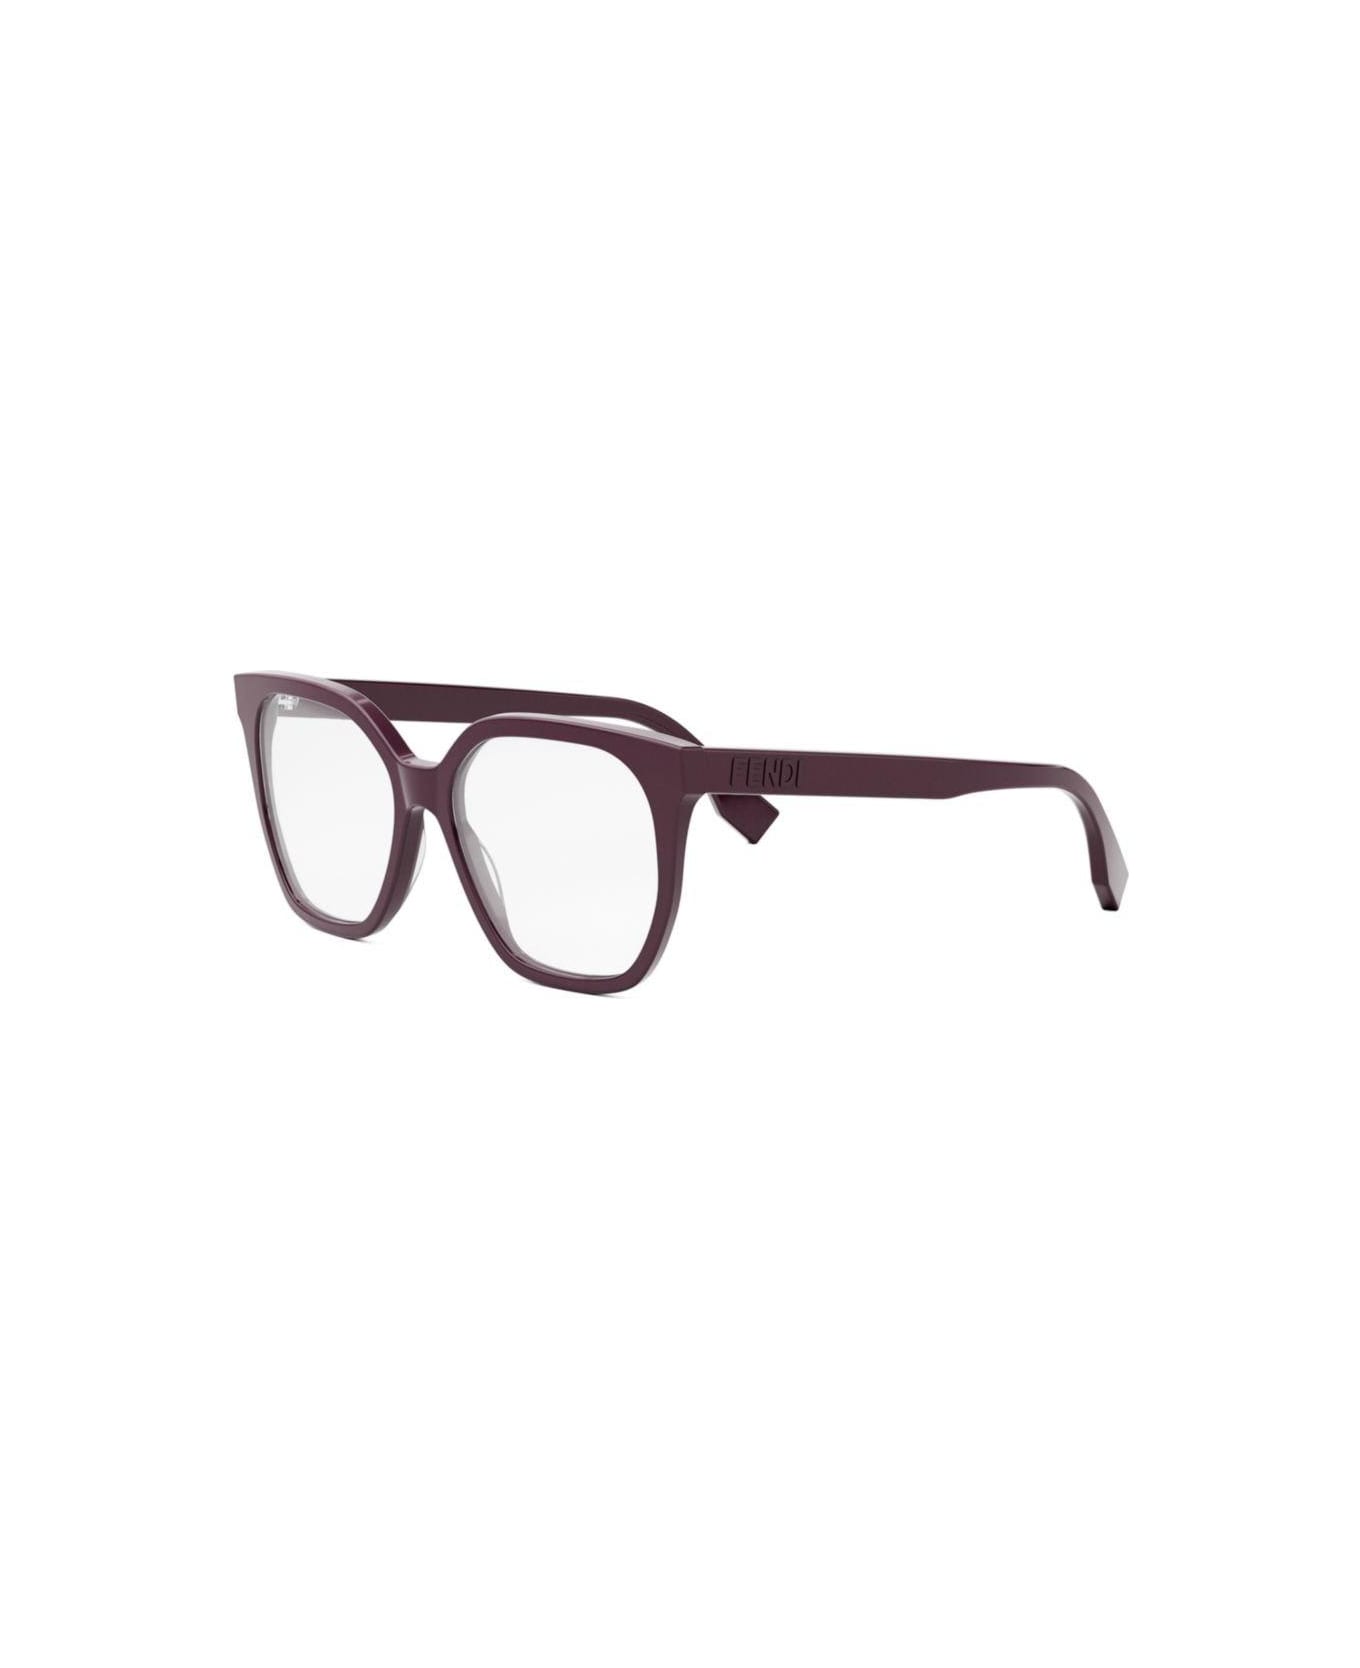 Fendi Eyewear Square Frame Glasses - 081 アイウェア